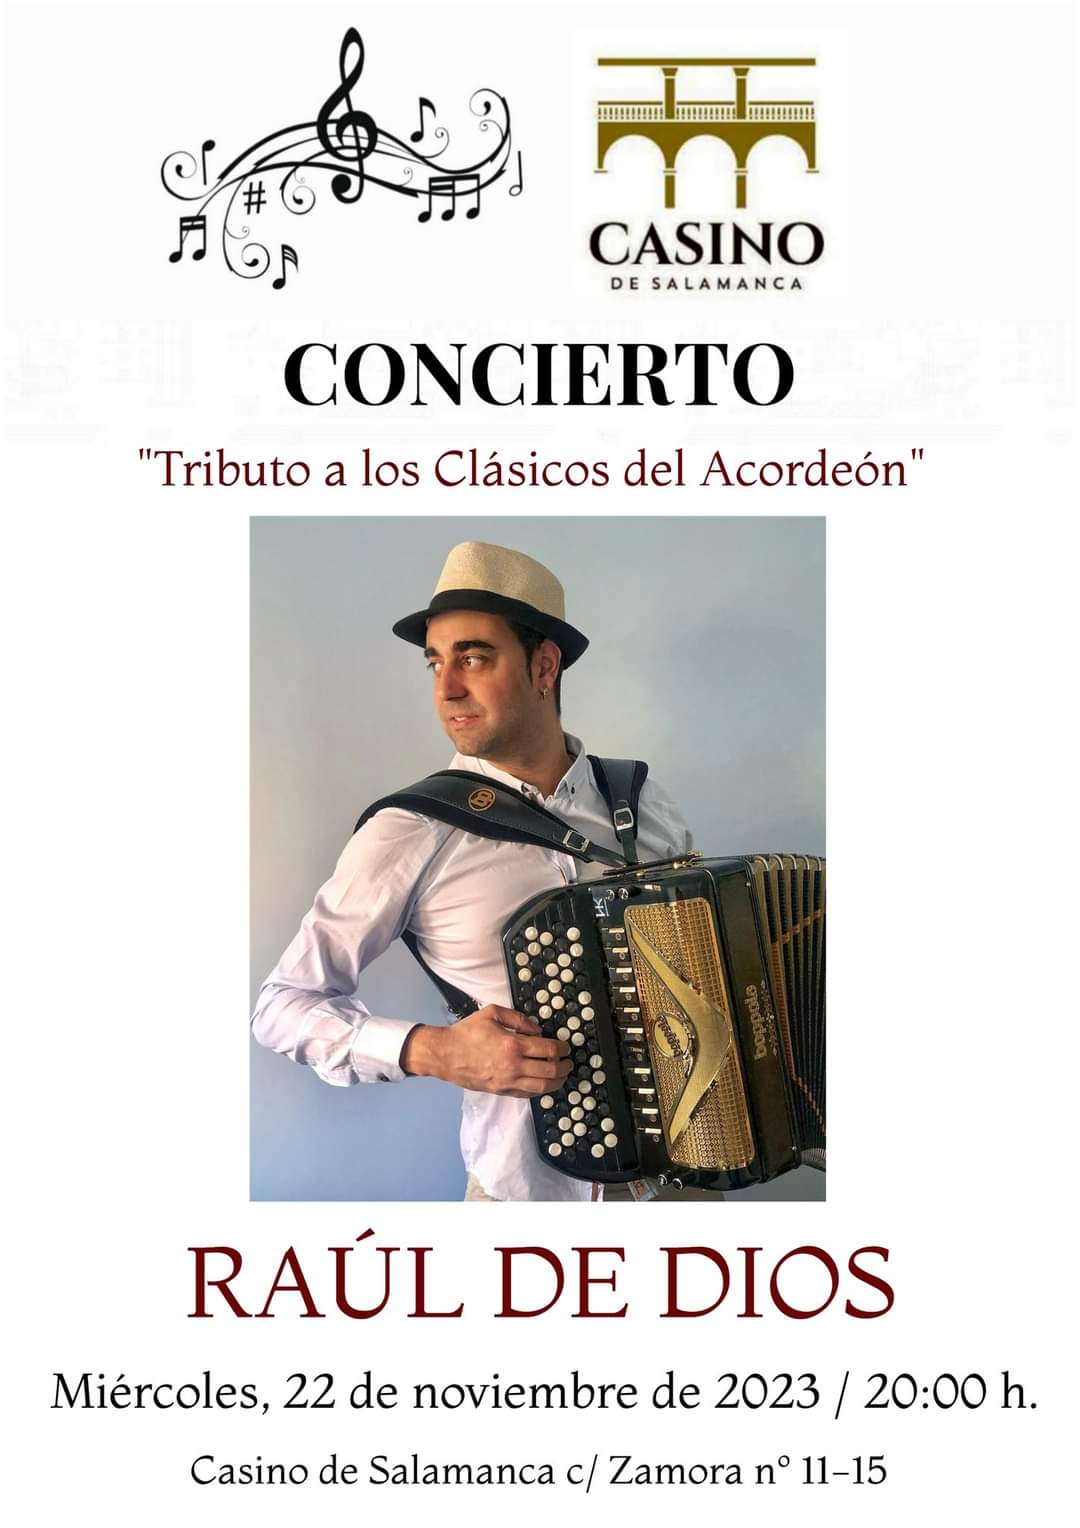 MUSICA - Raúl de Dios